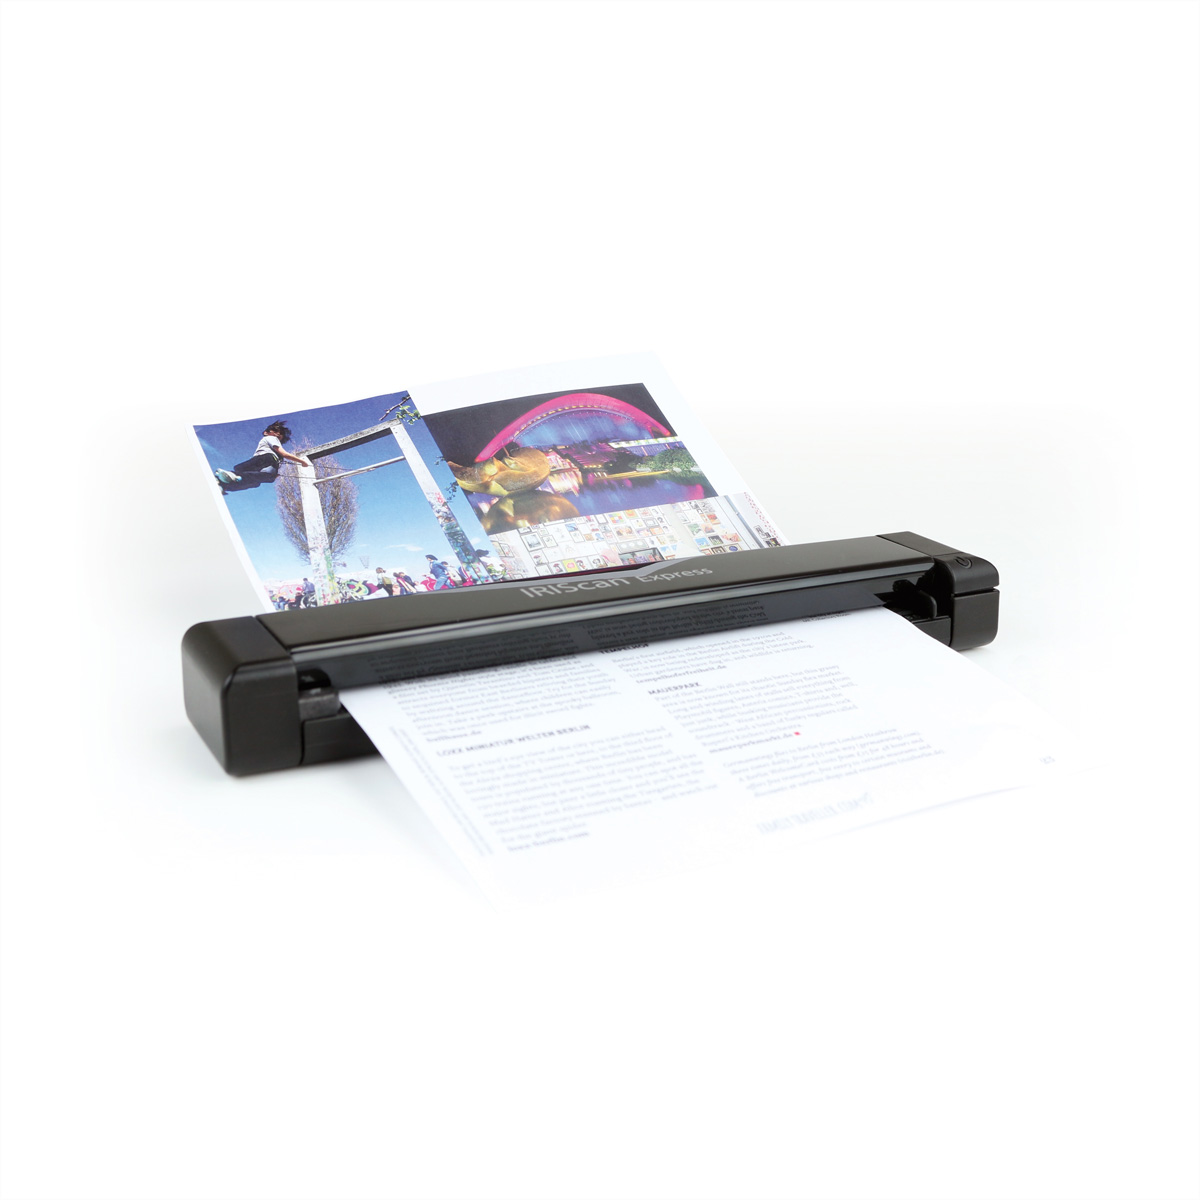 Dokumenten-Scanner 4 CIS, Farbe A4/letter IRIS 300/600/900 dpi, , EXPRESS IRISCAN